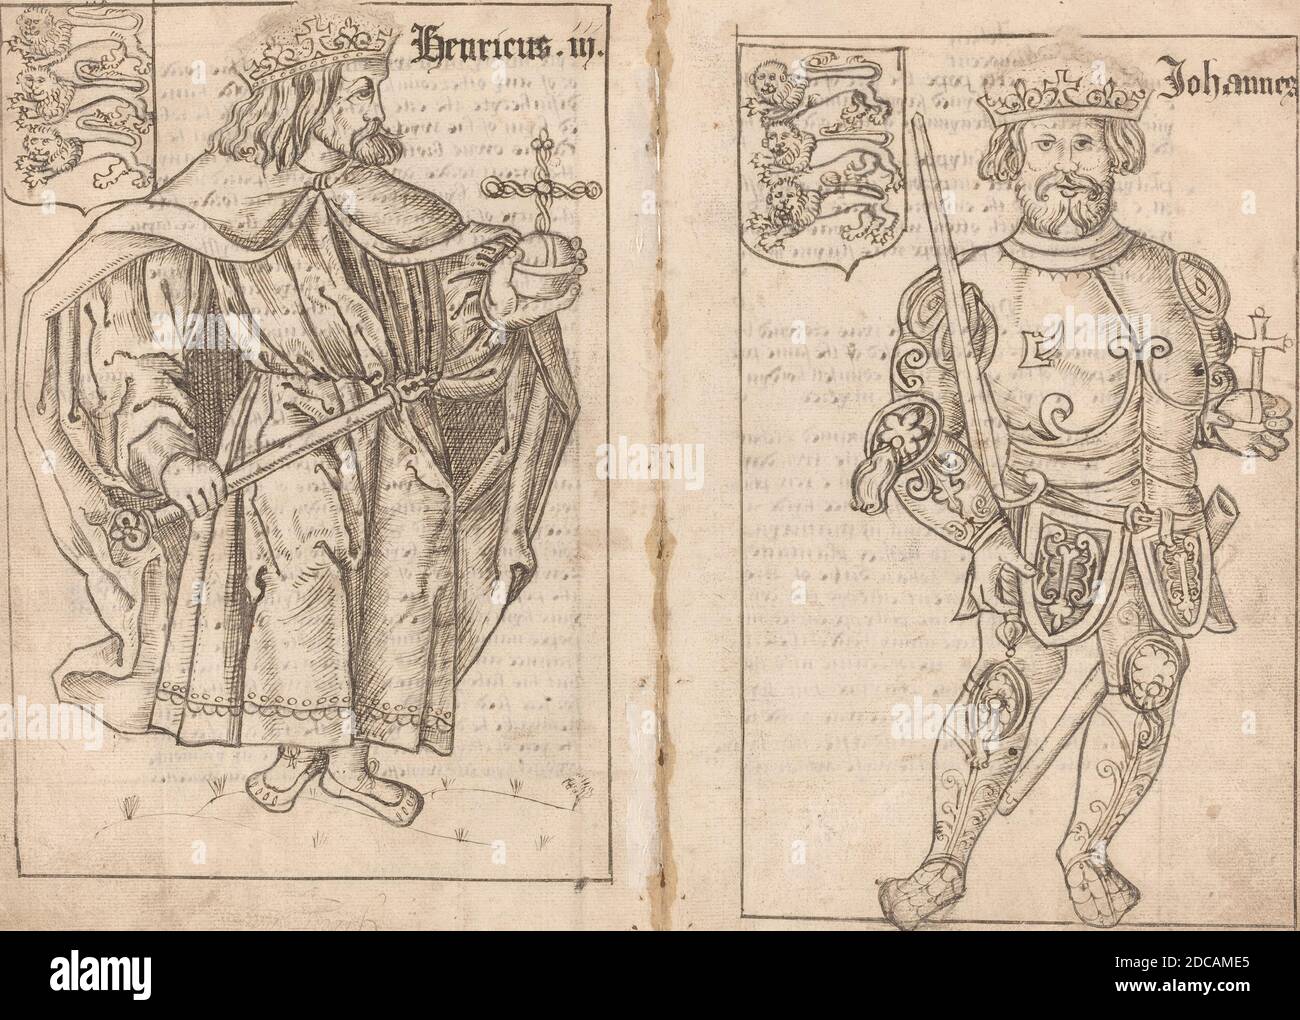 Englisch 16. Jahrhundert, (Künstler), King John, 16. Jahrhundert, Stift und  braun-schwarze Tinte über schwarzer Kreide auf gegelegtem Papier/1 von 2  drwgs. Auf gefaltetem Blatt von Ms. (zweites Blatt von Ms. verschachtelt mit